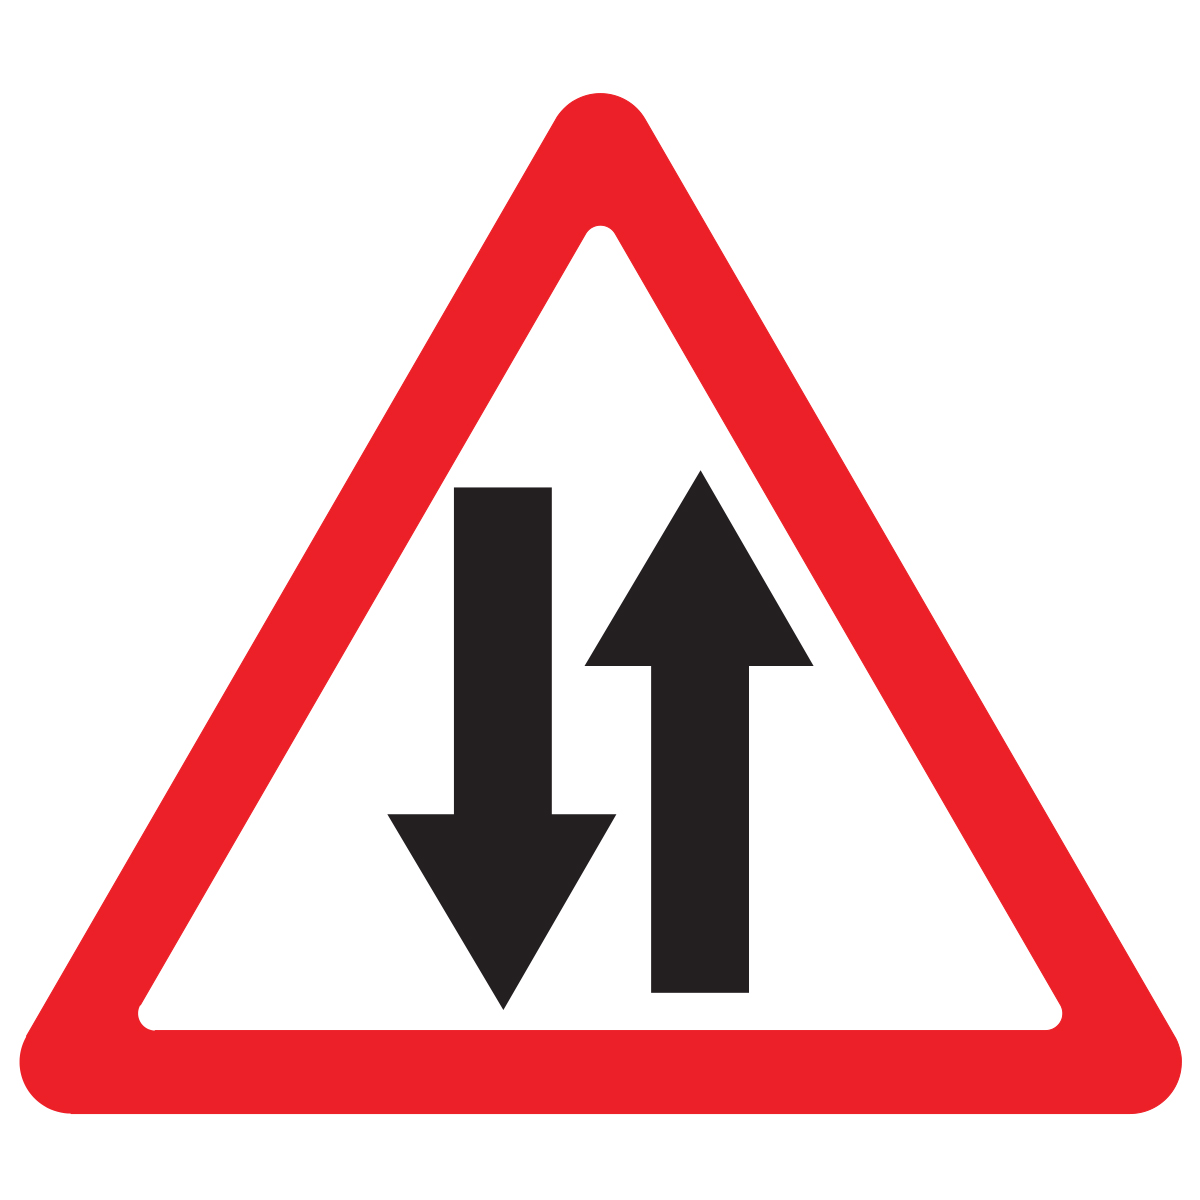 Дорожный знак 1.21 Двухстороннее движение (A=900) Тип Б